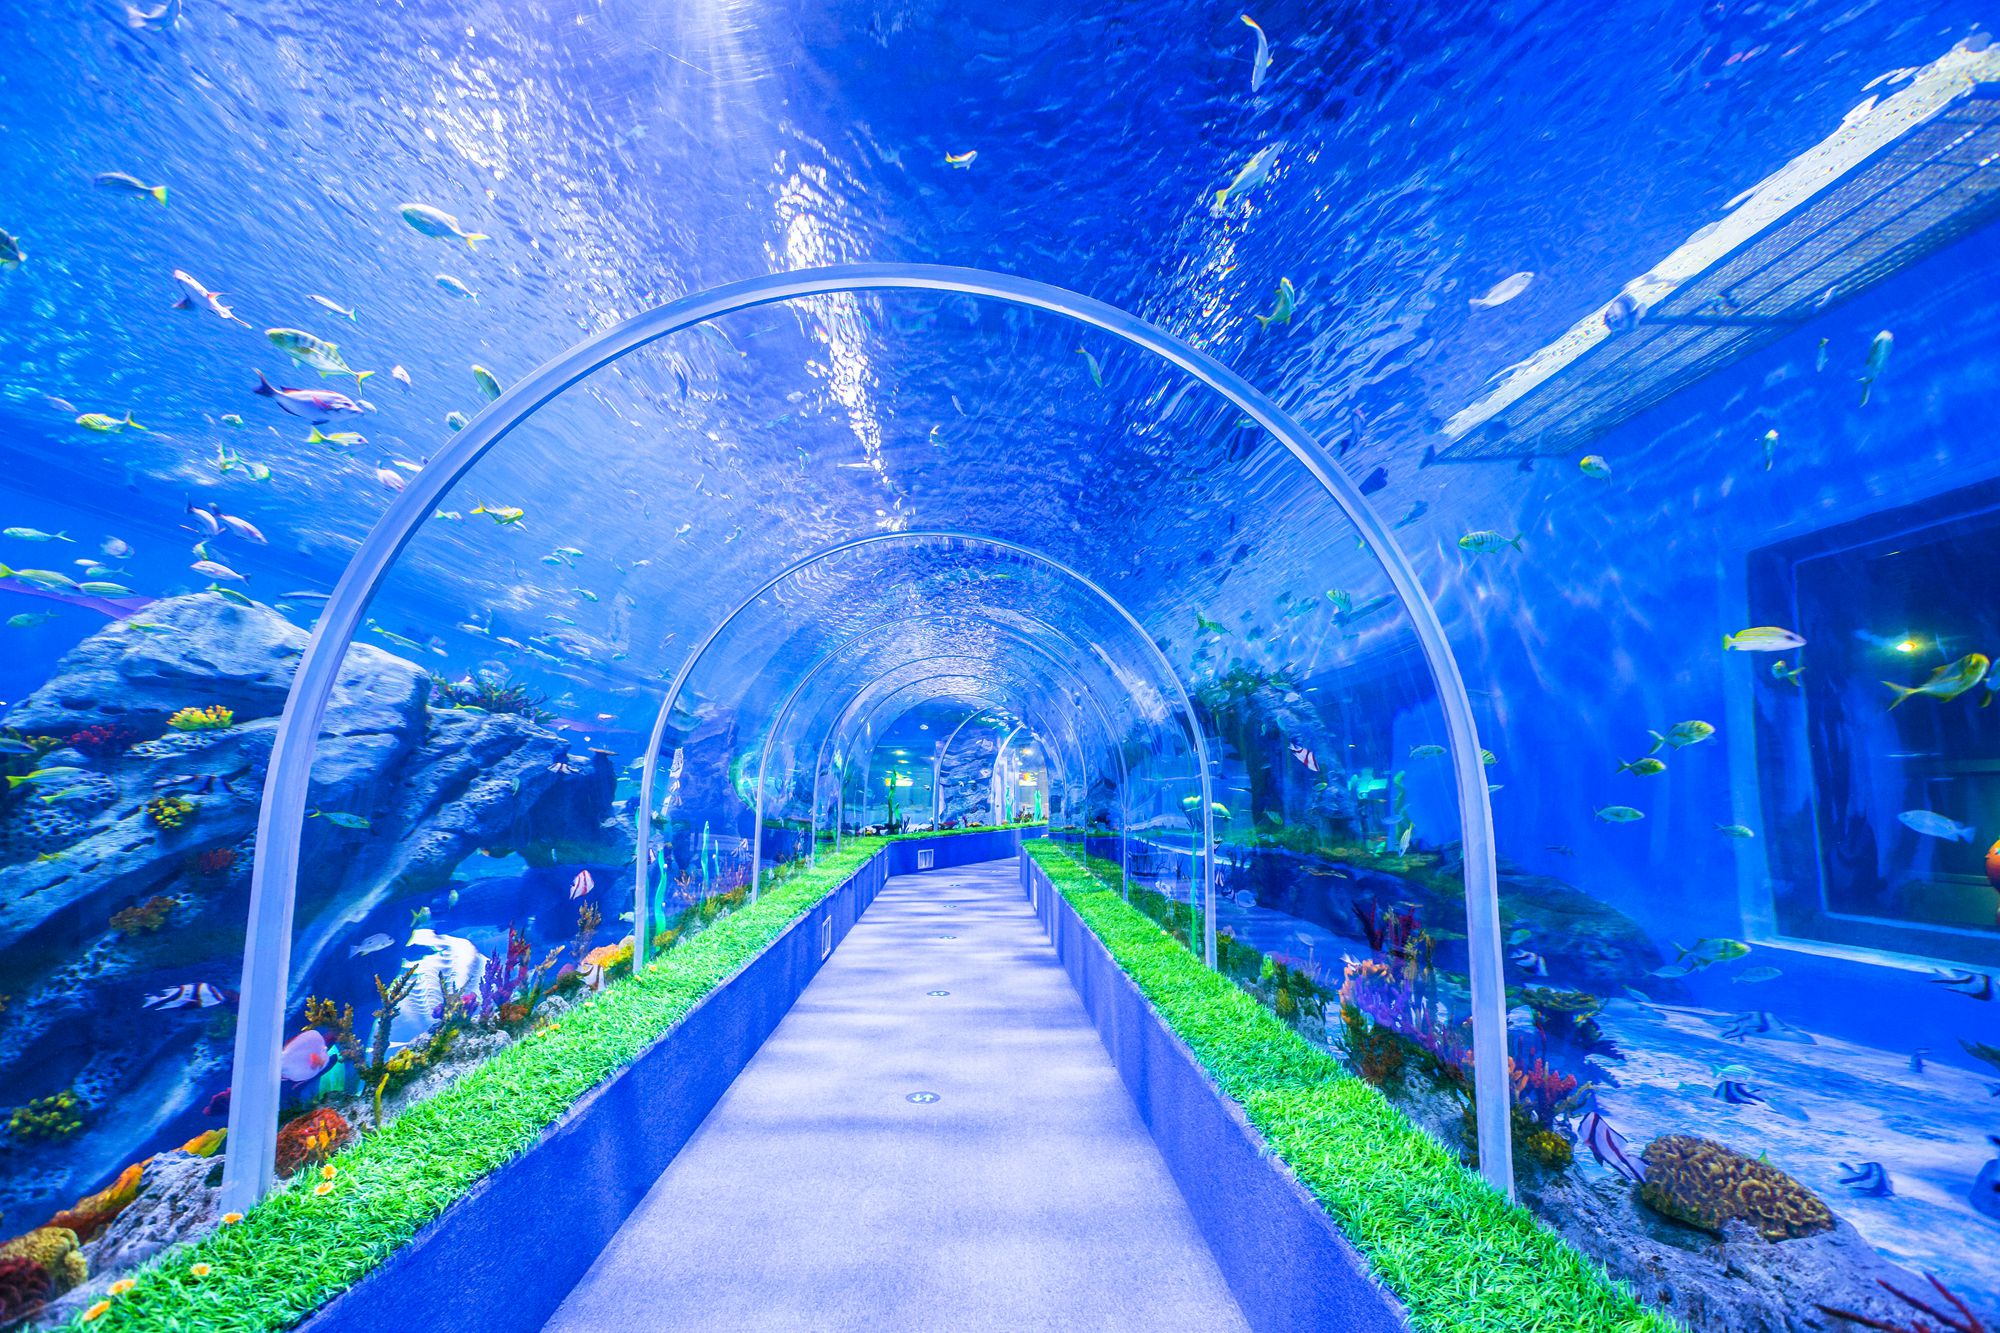 走在海洋隧道中,海底生物和人们只隔着一层玻璃,仿佛置身于海底世界